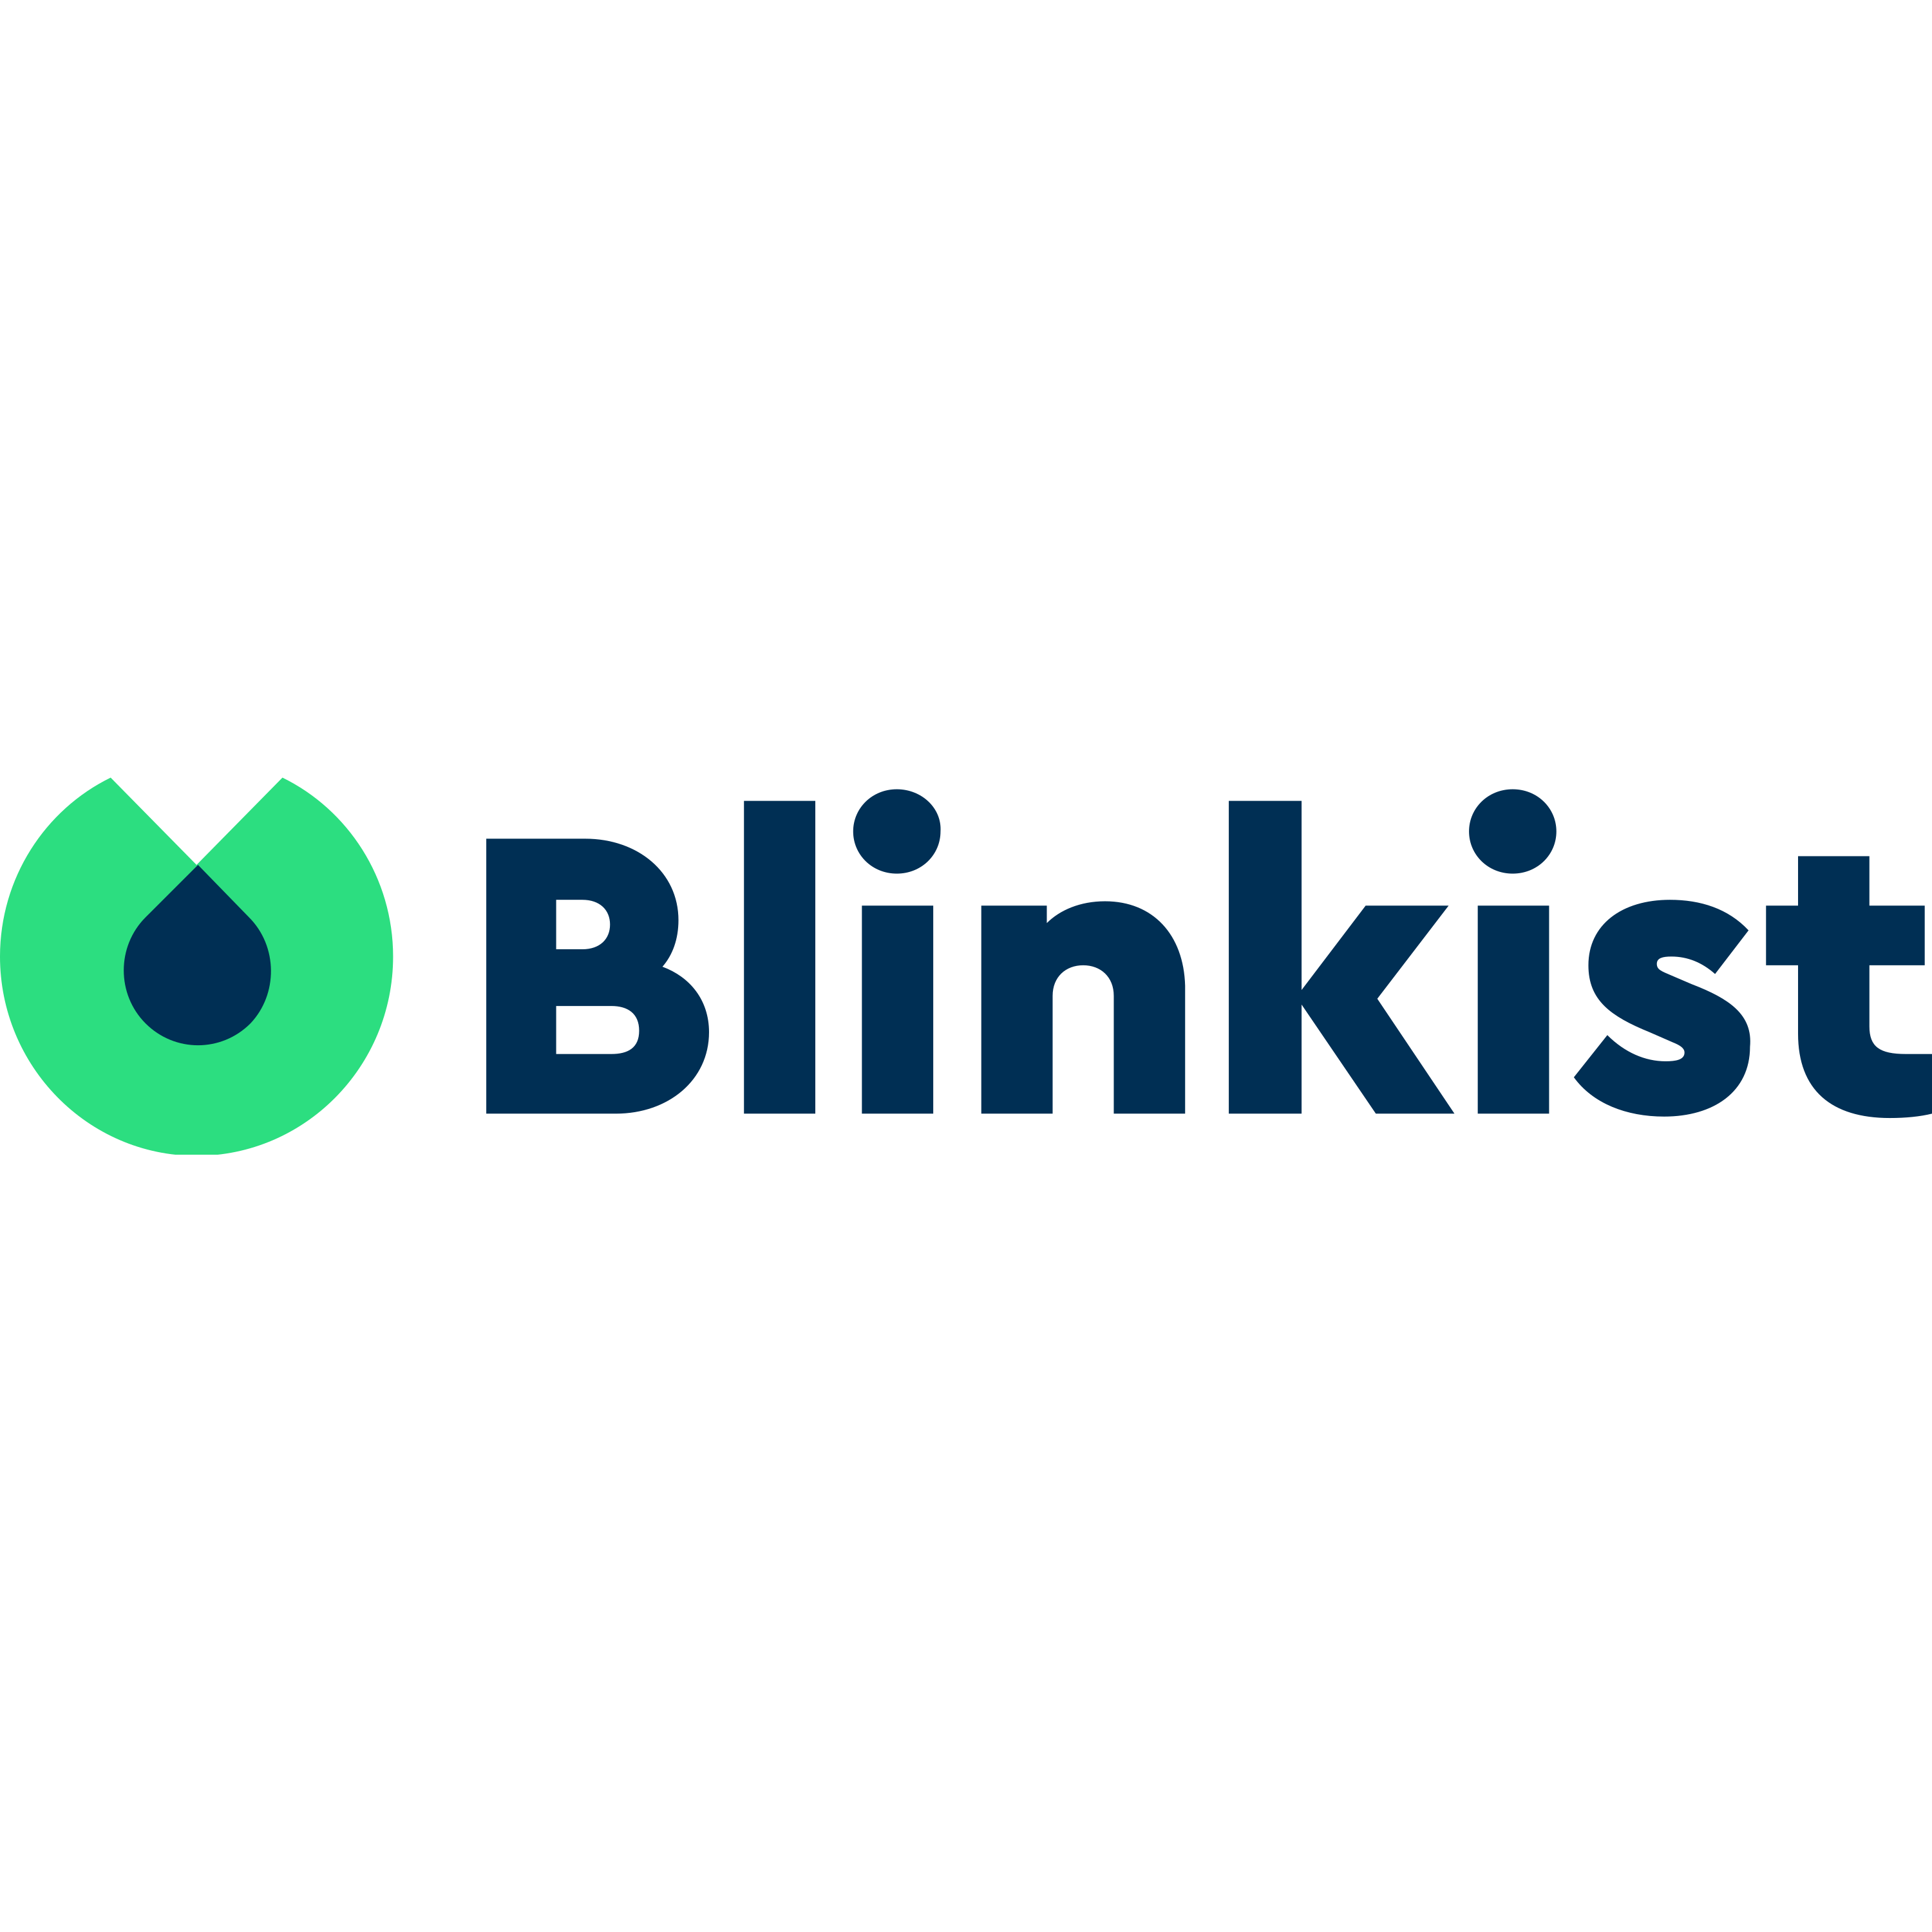 Blinklist Logo  Transparent Image